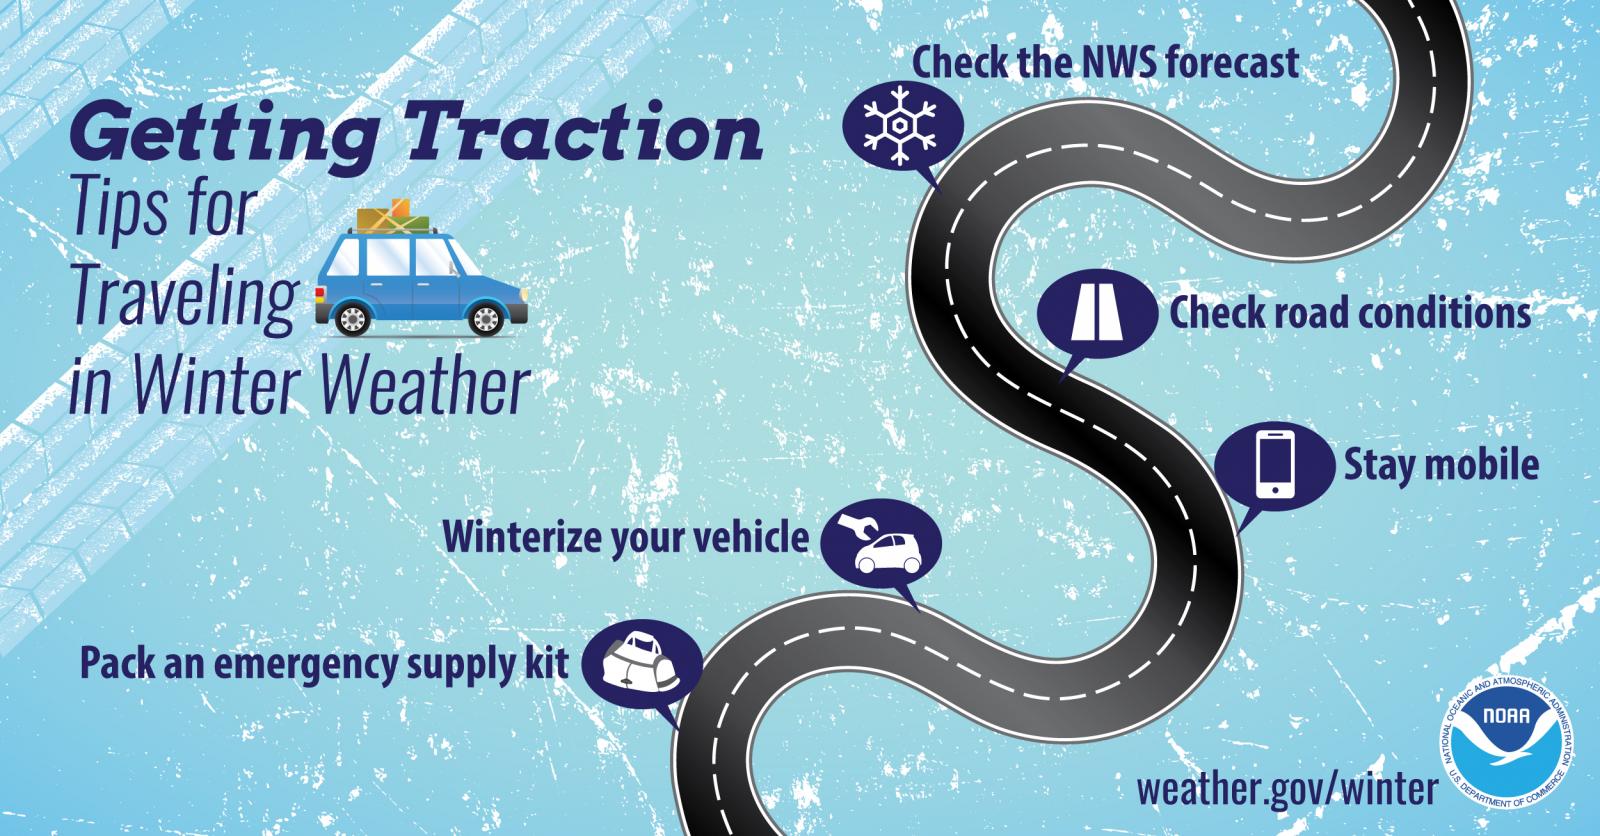 Tri-State Winter Weather Preparedness Week